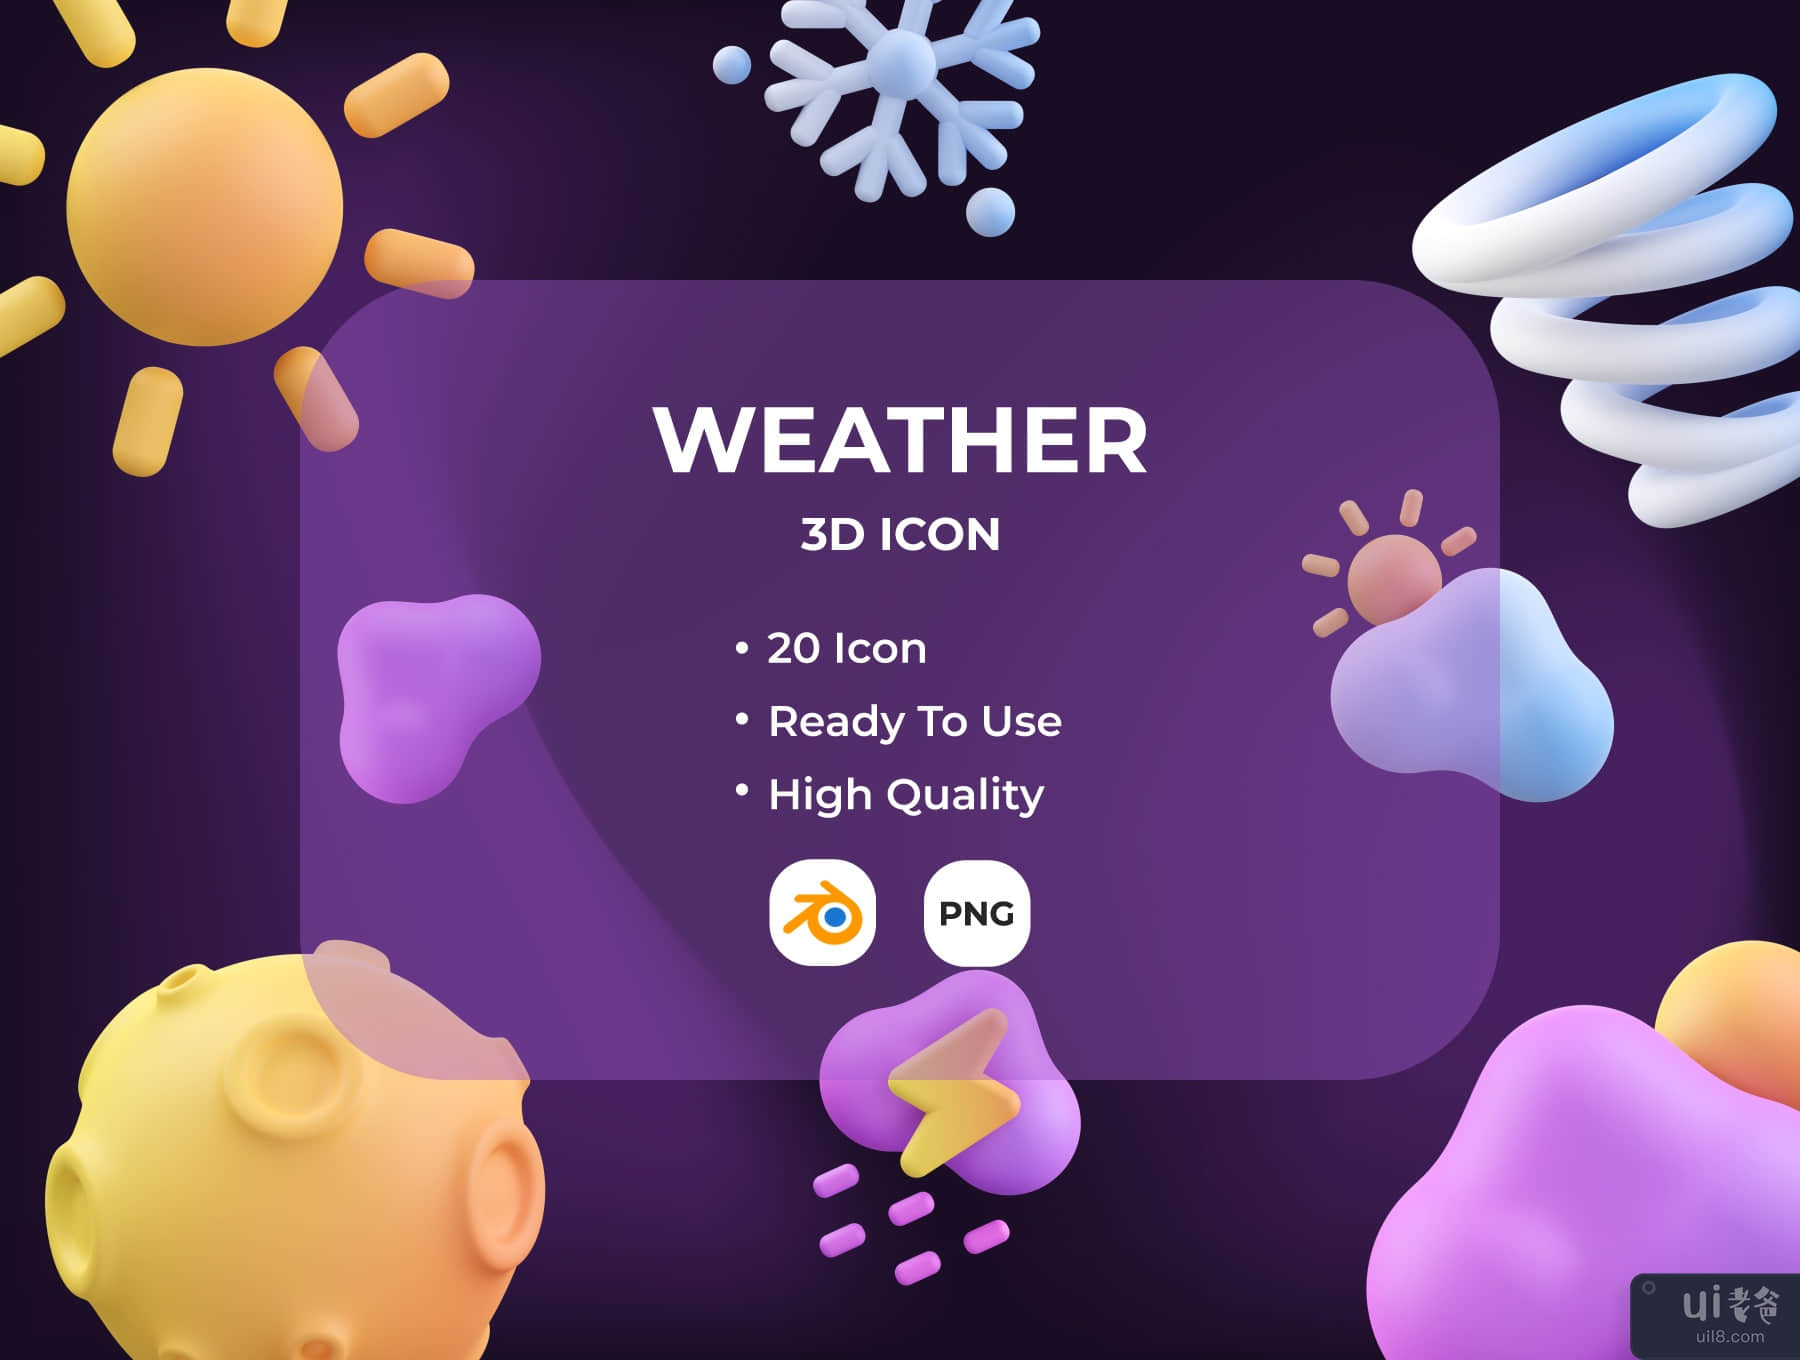 天气 3D 图标 (Weather 3D Icon)插图5